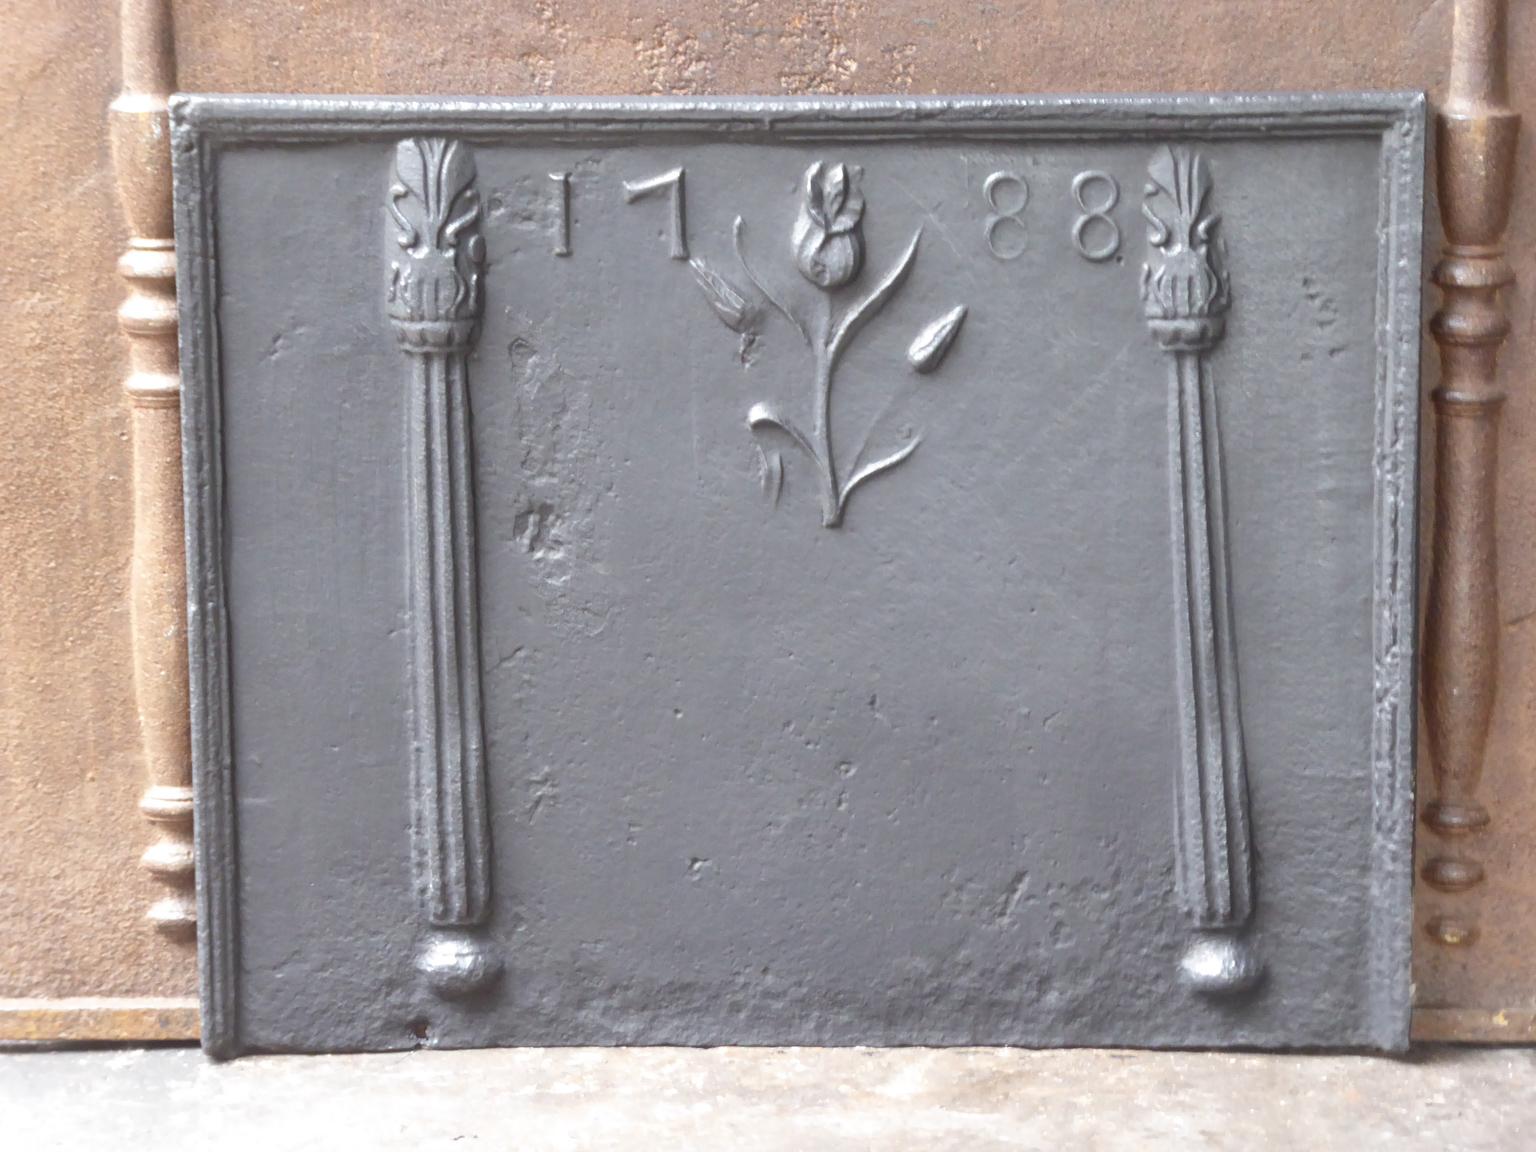 Plaque de cheminée néoclassique française avec deux piliers décorés, une fleur et la date de production 1788.

La plaque de cheminée est en fonte et a une patine noire/étain. Il est en bon état et ne présente pas de fissures.